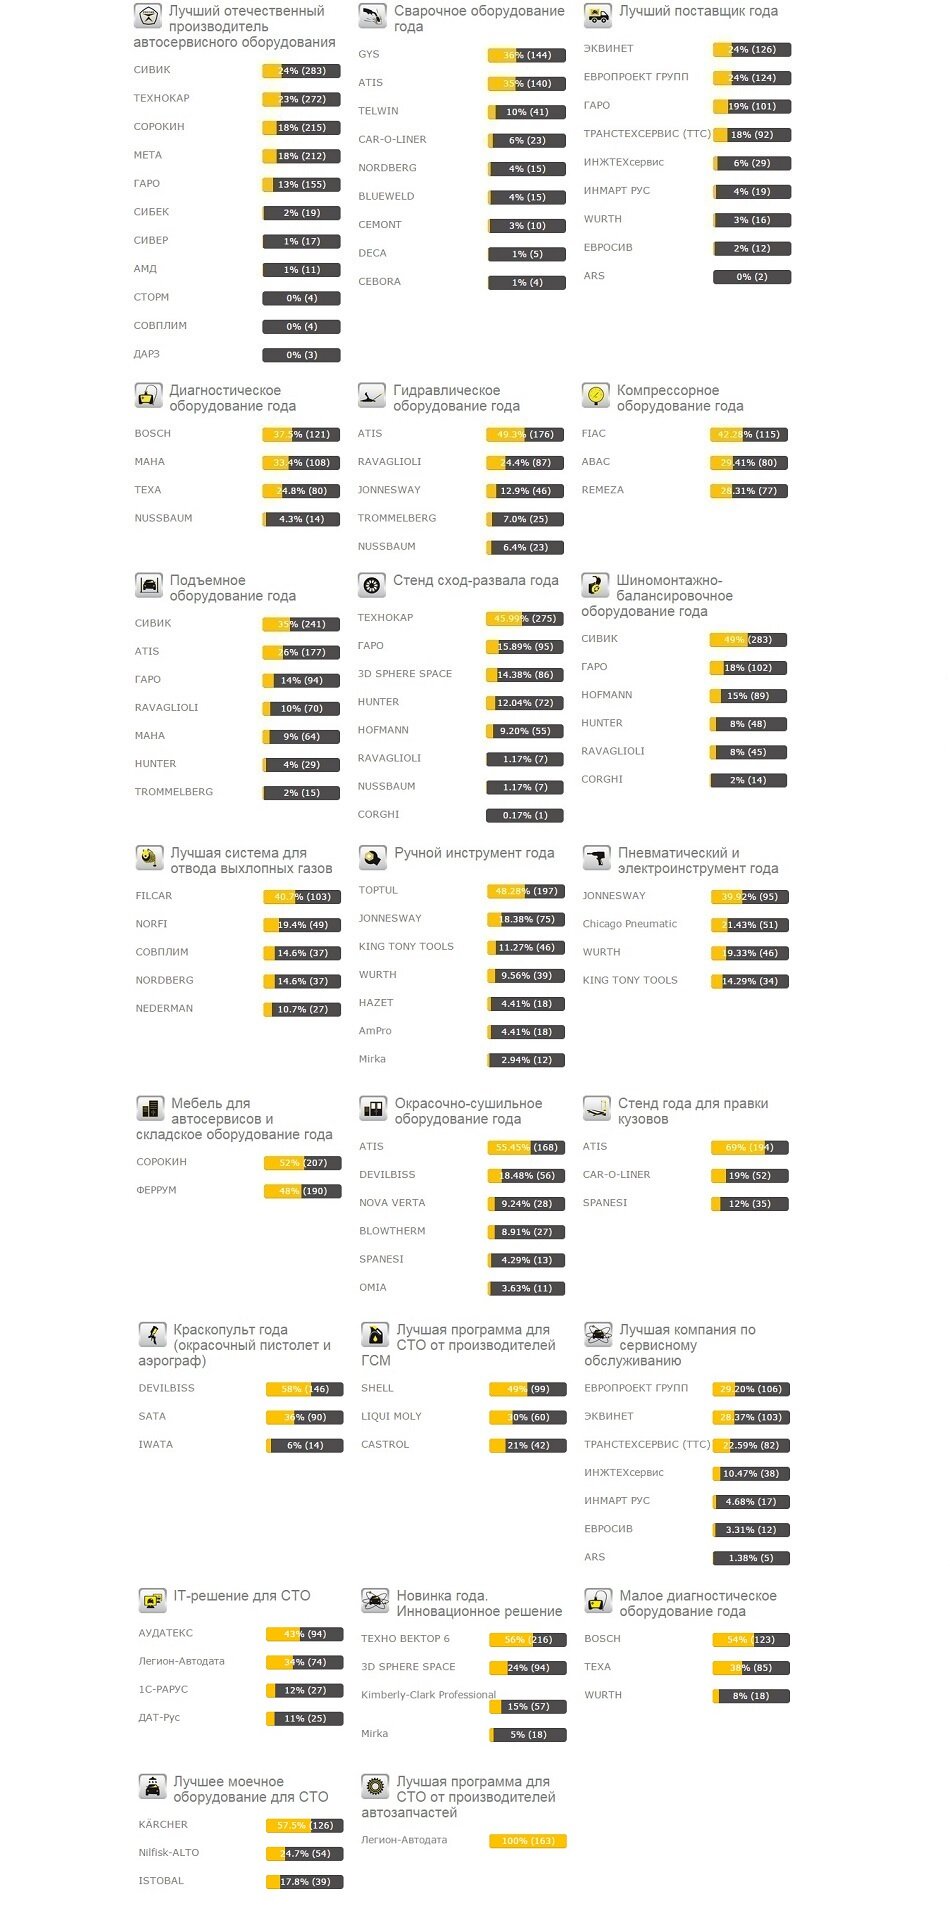 сводная таблица голосования по премии Золотой ключ 2014